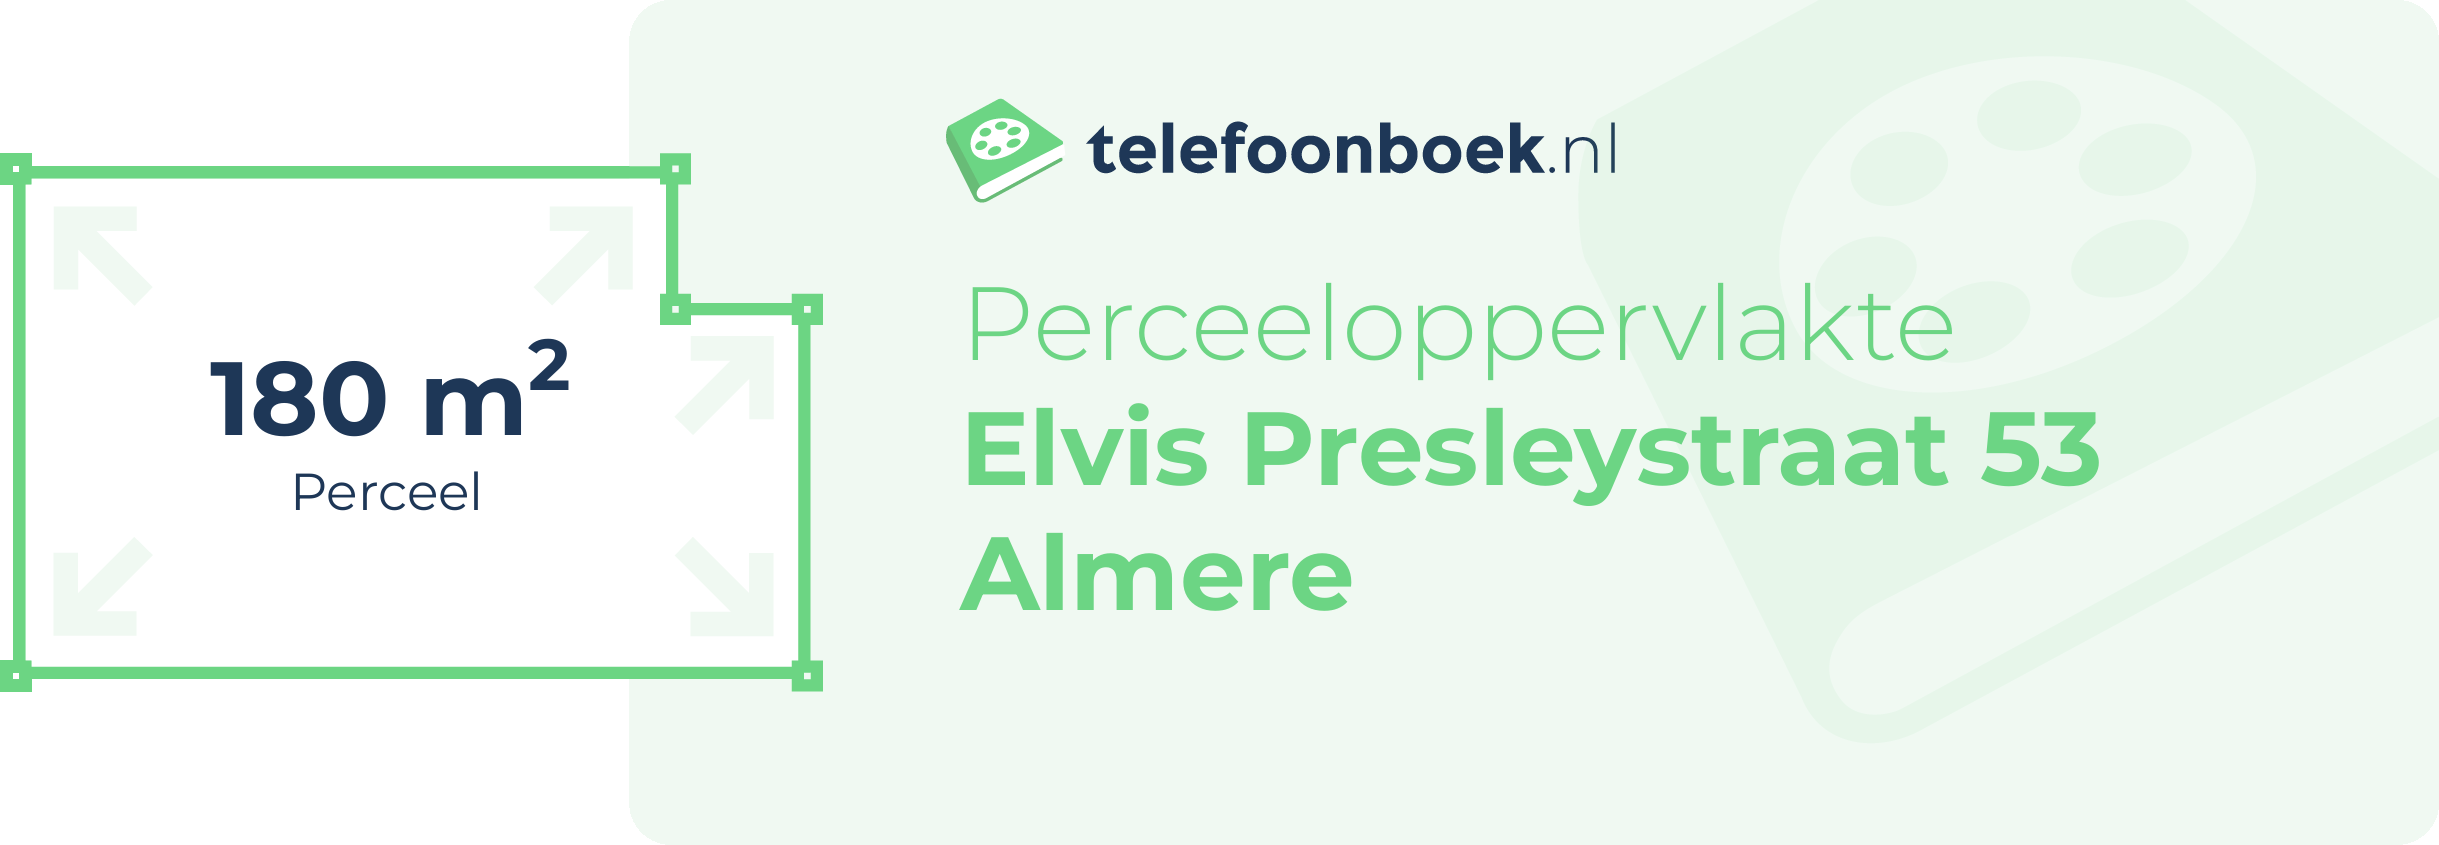 Perceeloppervlakte Elvis Presleystraat 53 Almere